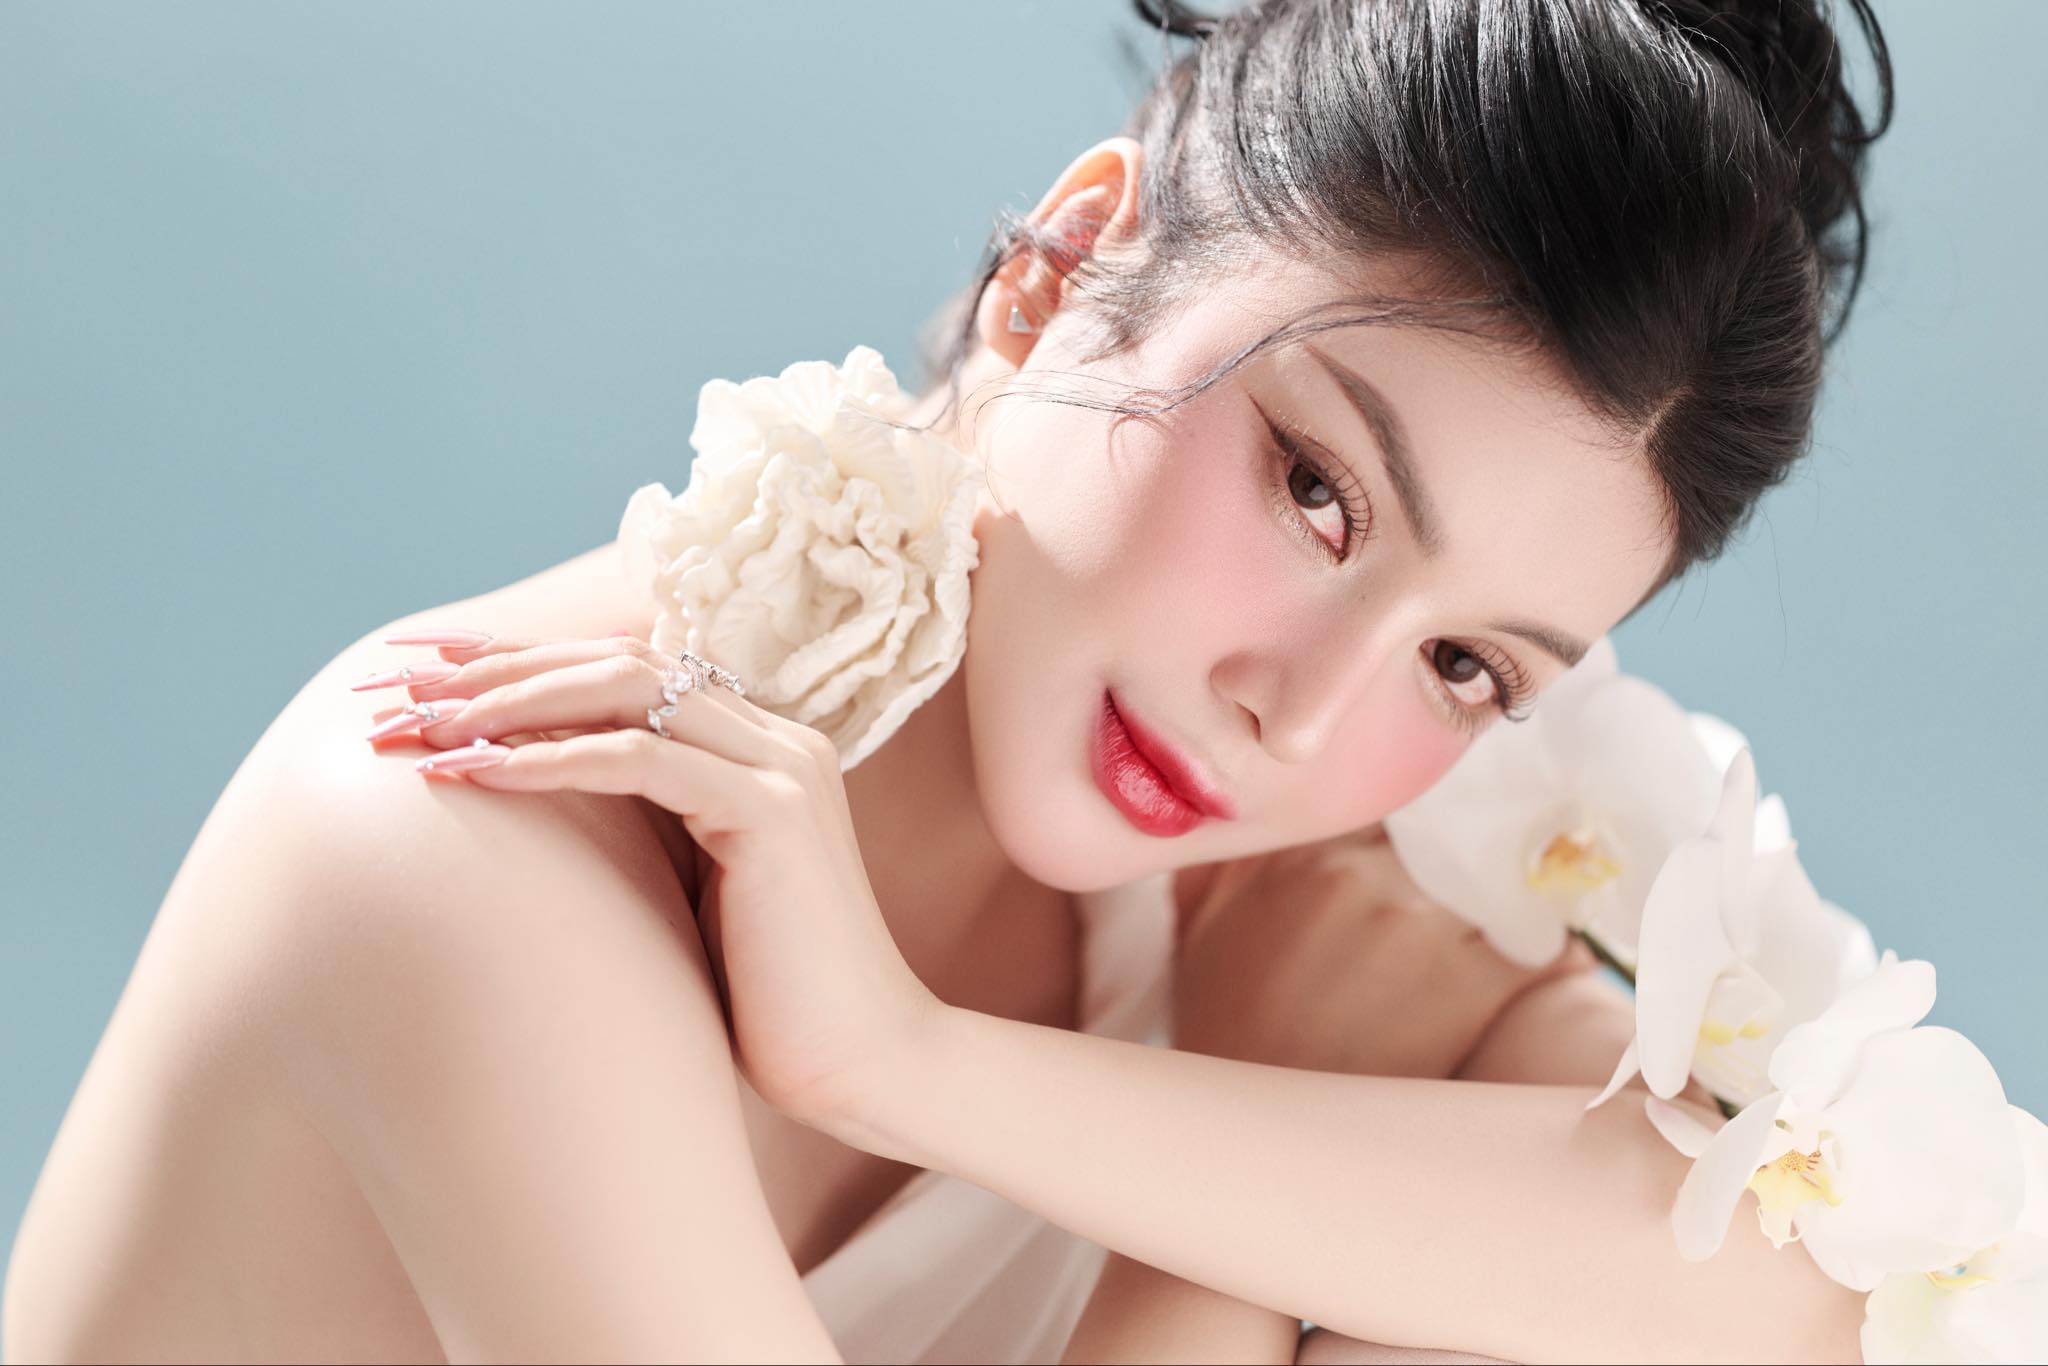 Lily Chen vừa ra mắt thương hiệu mỹ phẩm riêng, sau thời gian dài ấp ủ. Ban đầu, người đẹp 9X tập trung khai thác ở thị trường Tây Ninh - quê hương cô. Sau này, giọng ca bolero dự định sẽ phát triển thương hiệu của mình tại TP.HCM